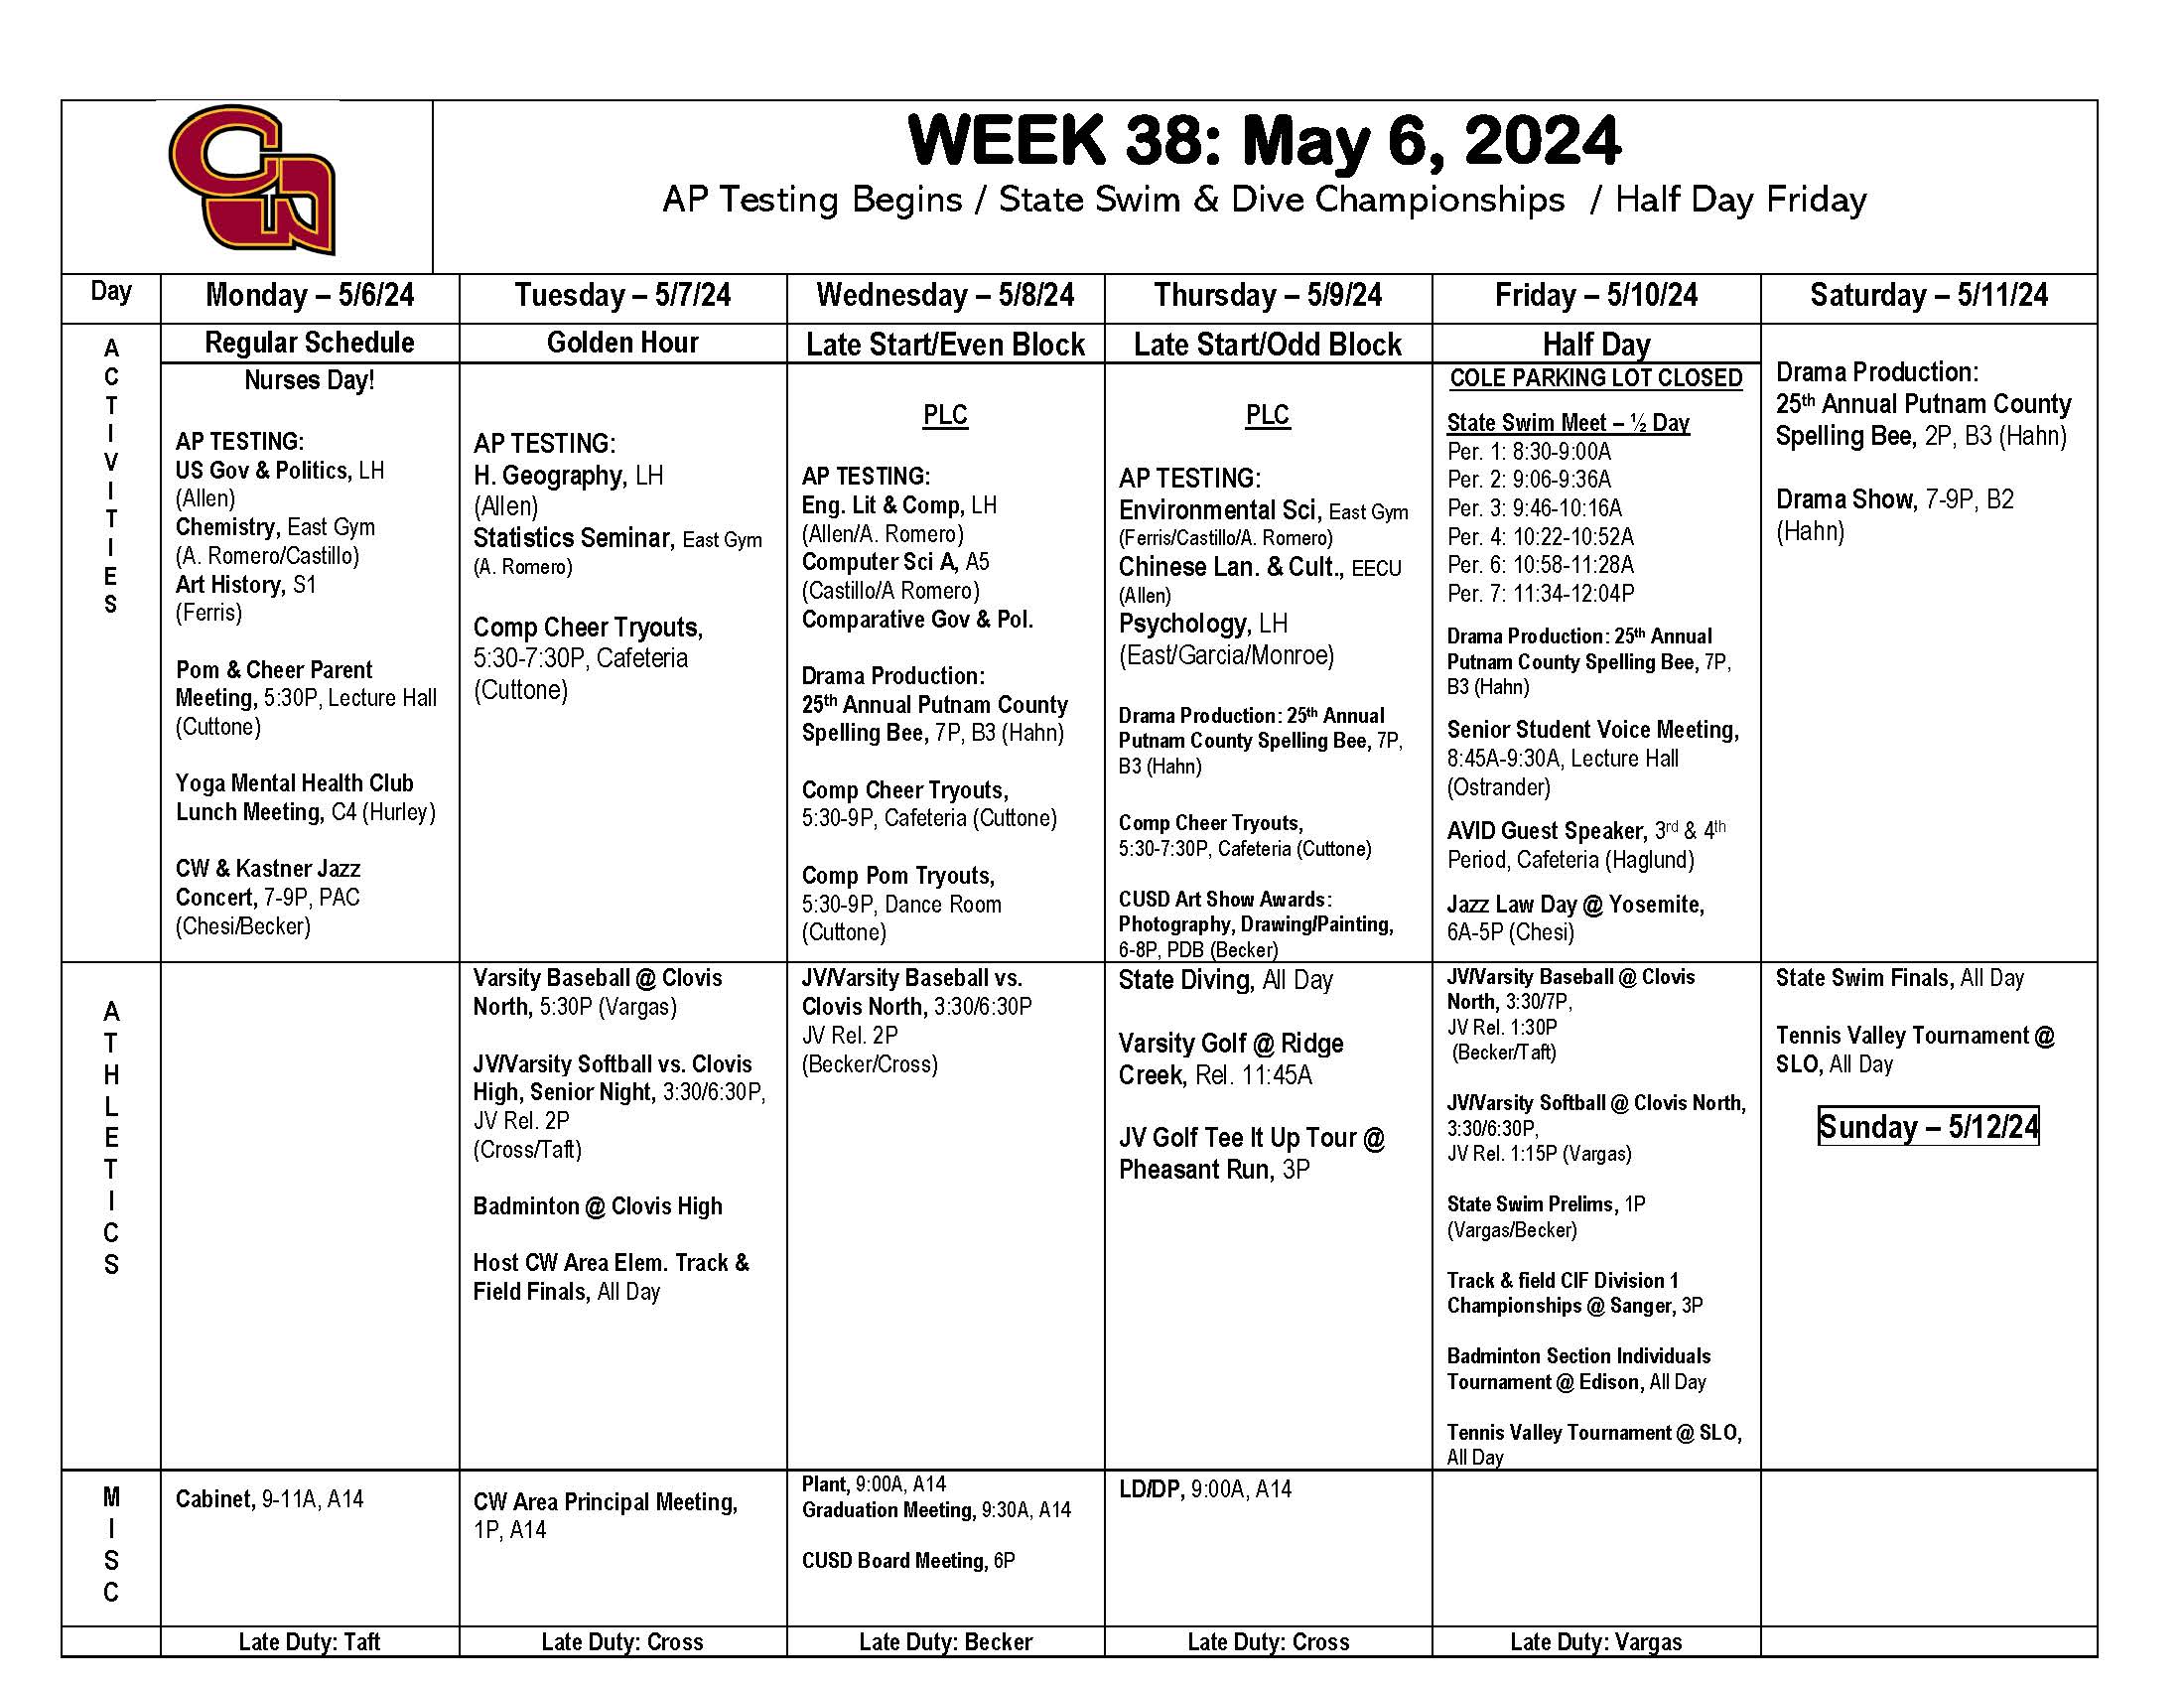 Week of May 6th